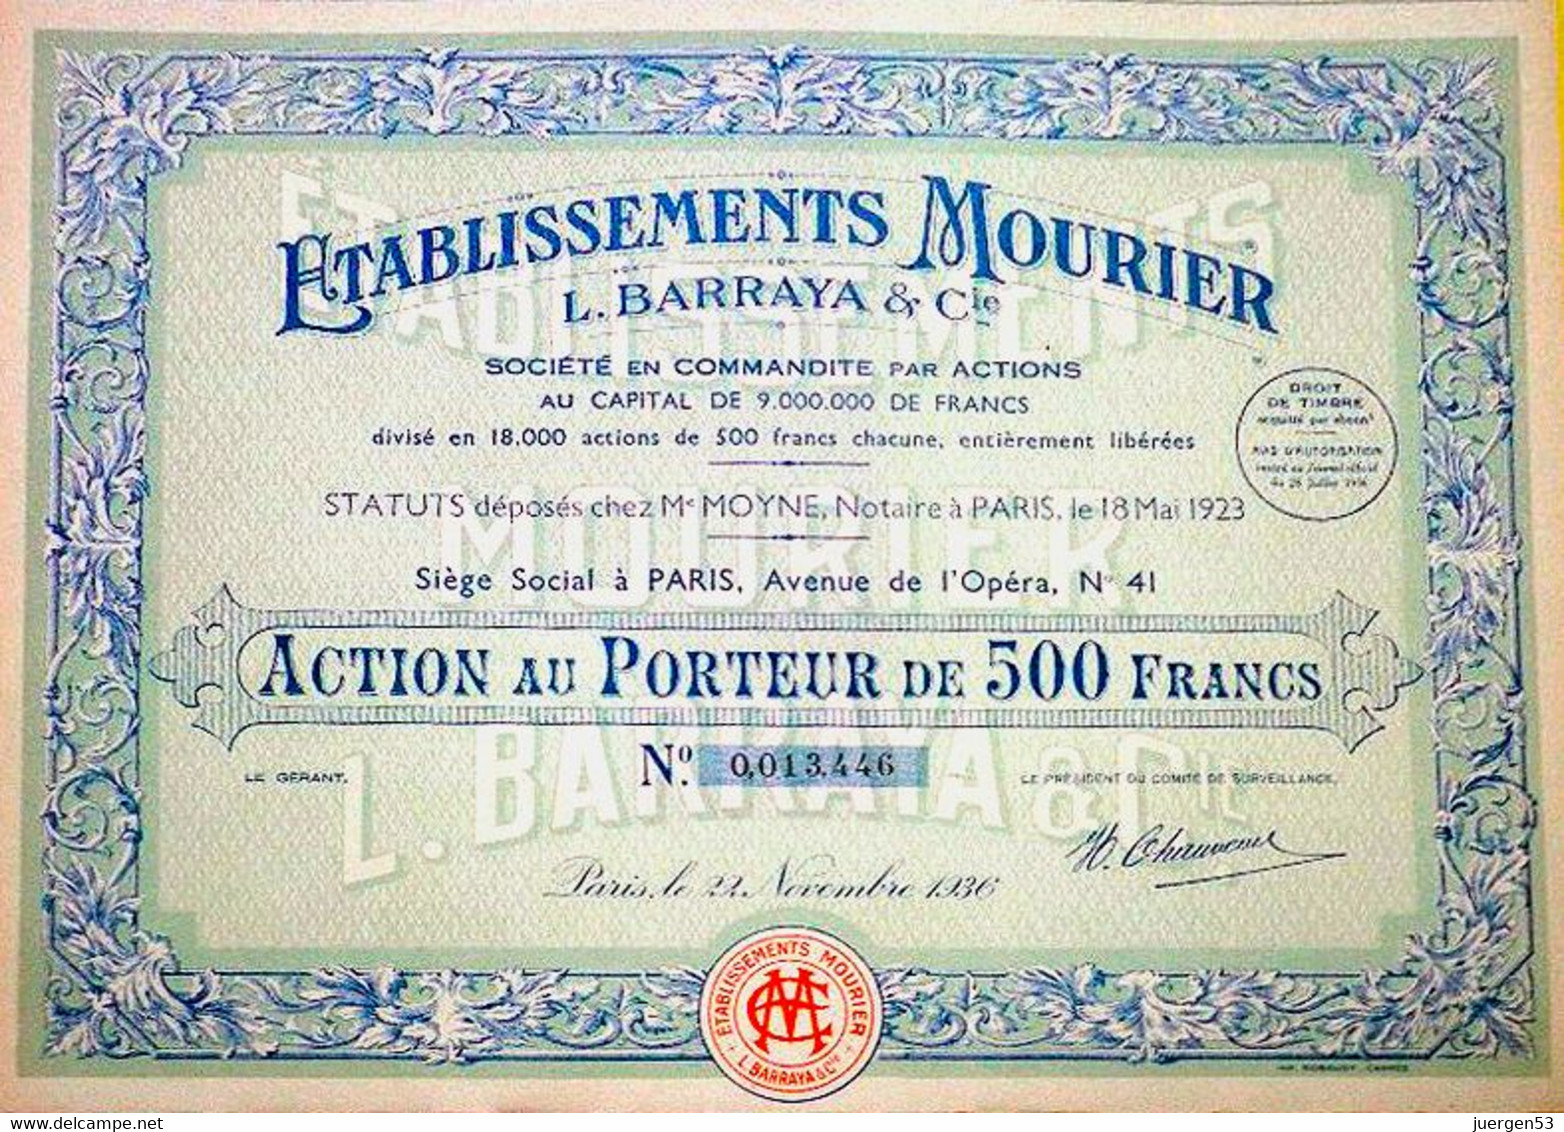 3 X Ets. MOURIER L. BARRAYA & Cie – 1923, 1931 + 1936 - Tourism